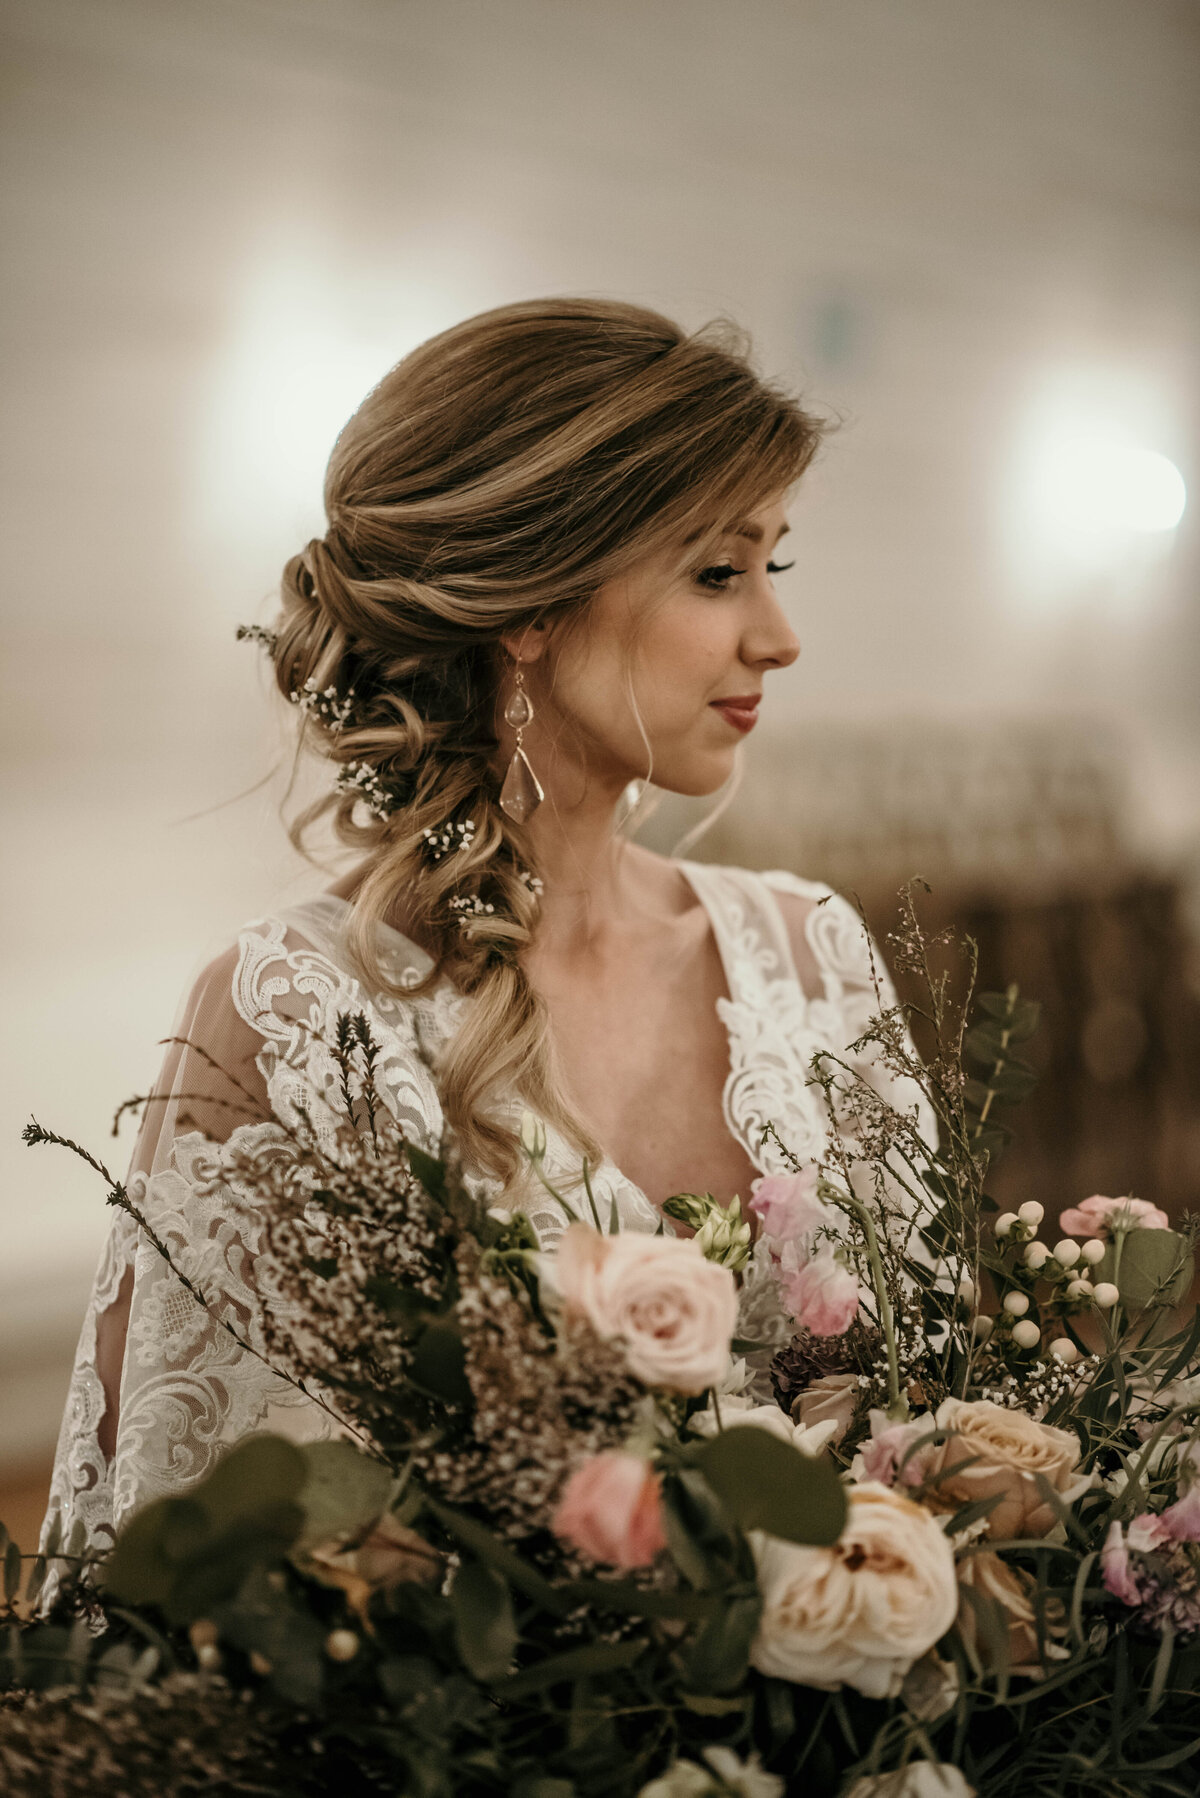 A bride behind her bouquet